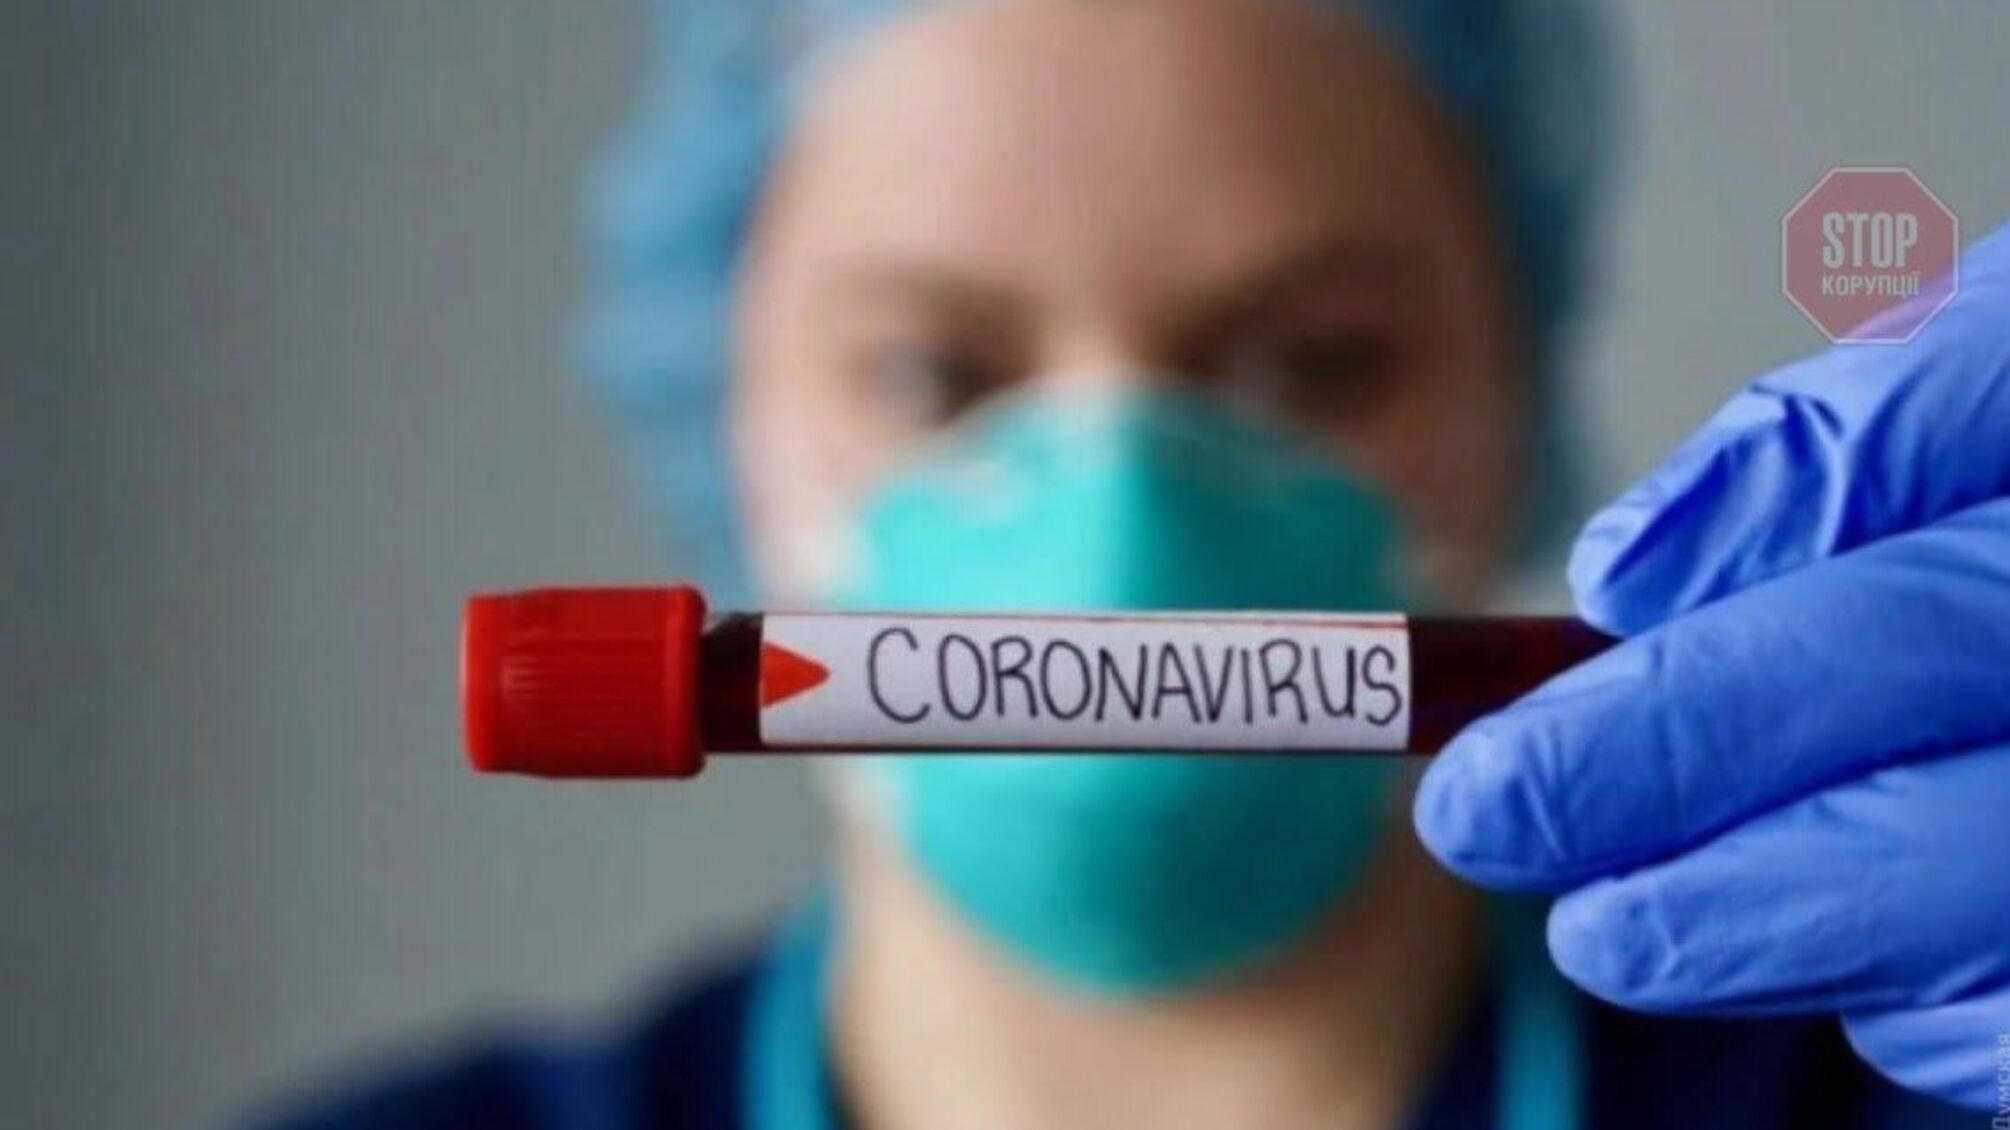 Во всем мире было зарегистрировано 95 миллионов случаев COVID-19